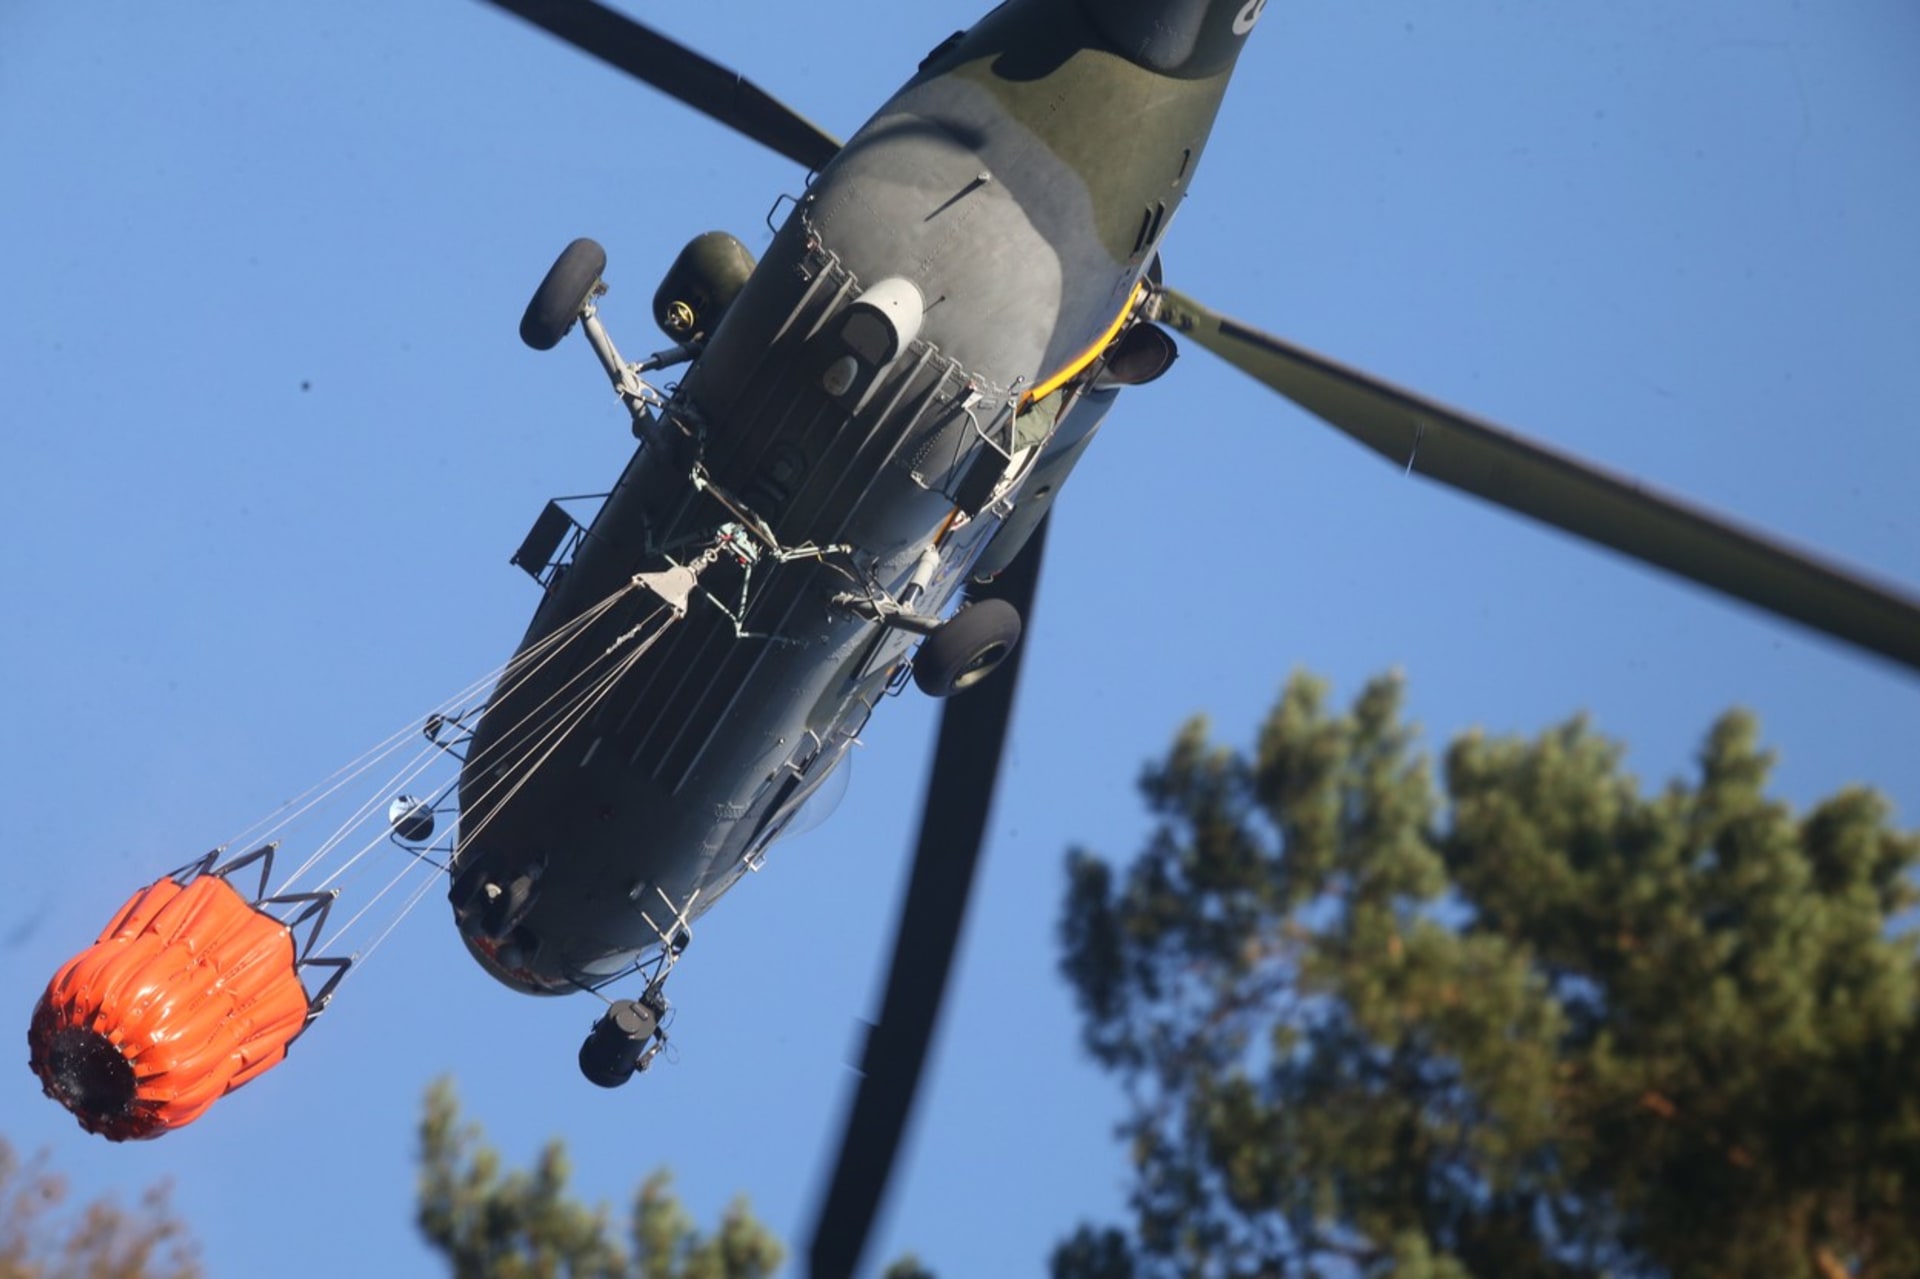 Vrtulník nabírá vodu z Labe do bambi vaku.